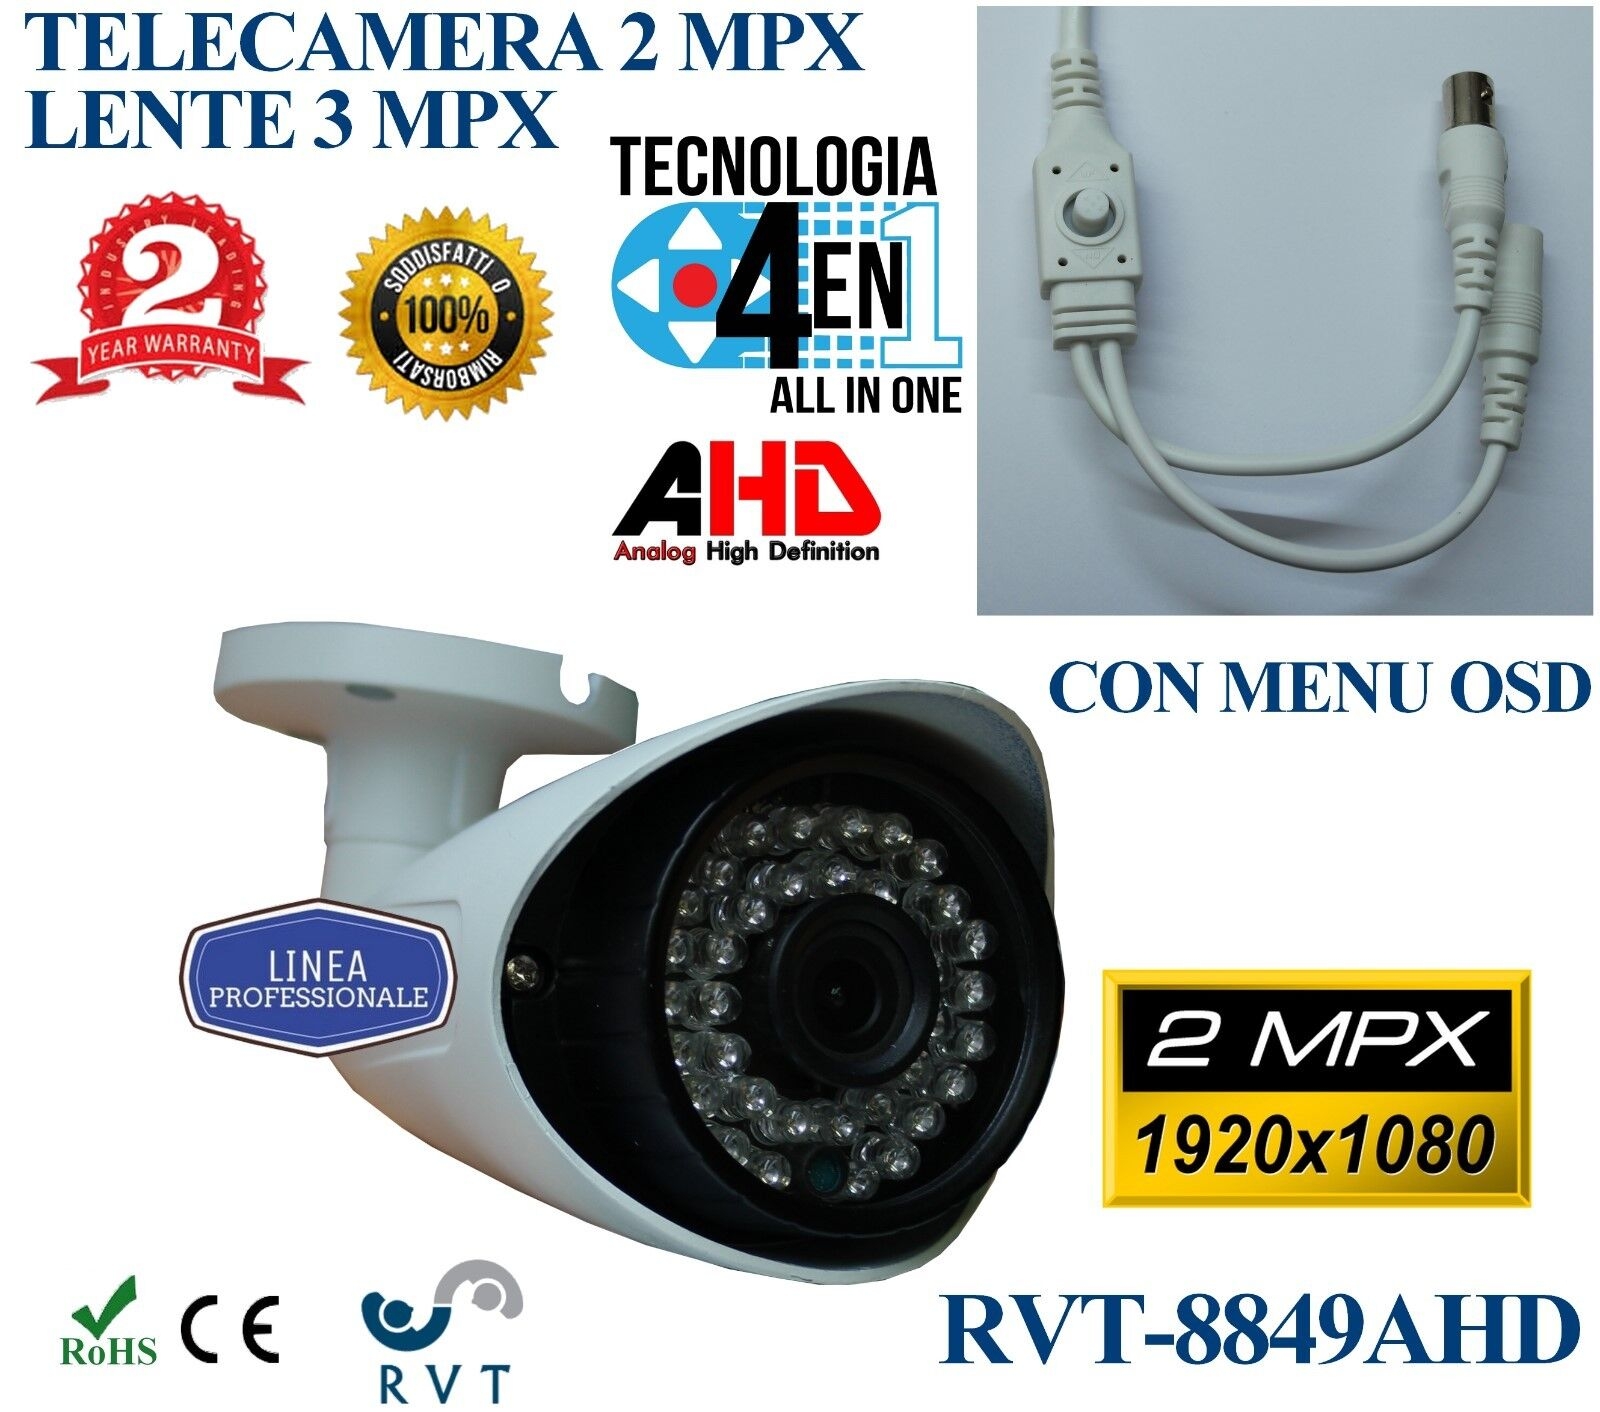 Telecamera Lente 3 Mpx 3.6 Mm 36 Led 2 Megapixel Compatibile Con Tutti I Dvr